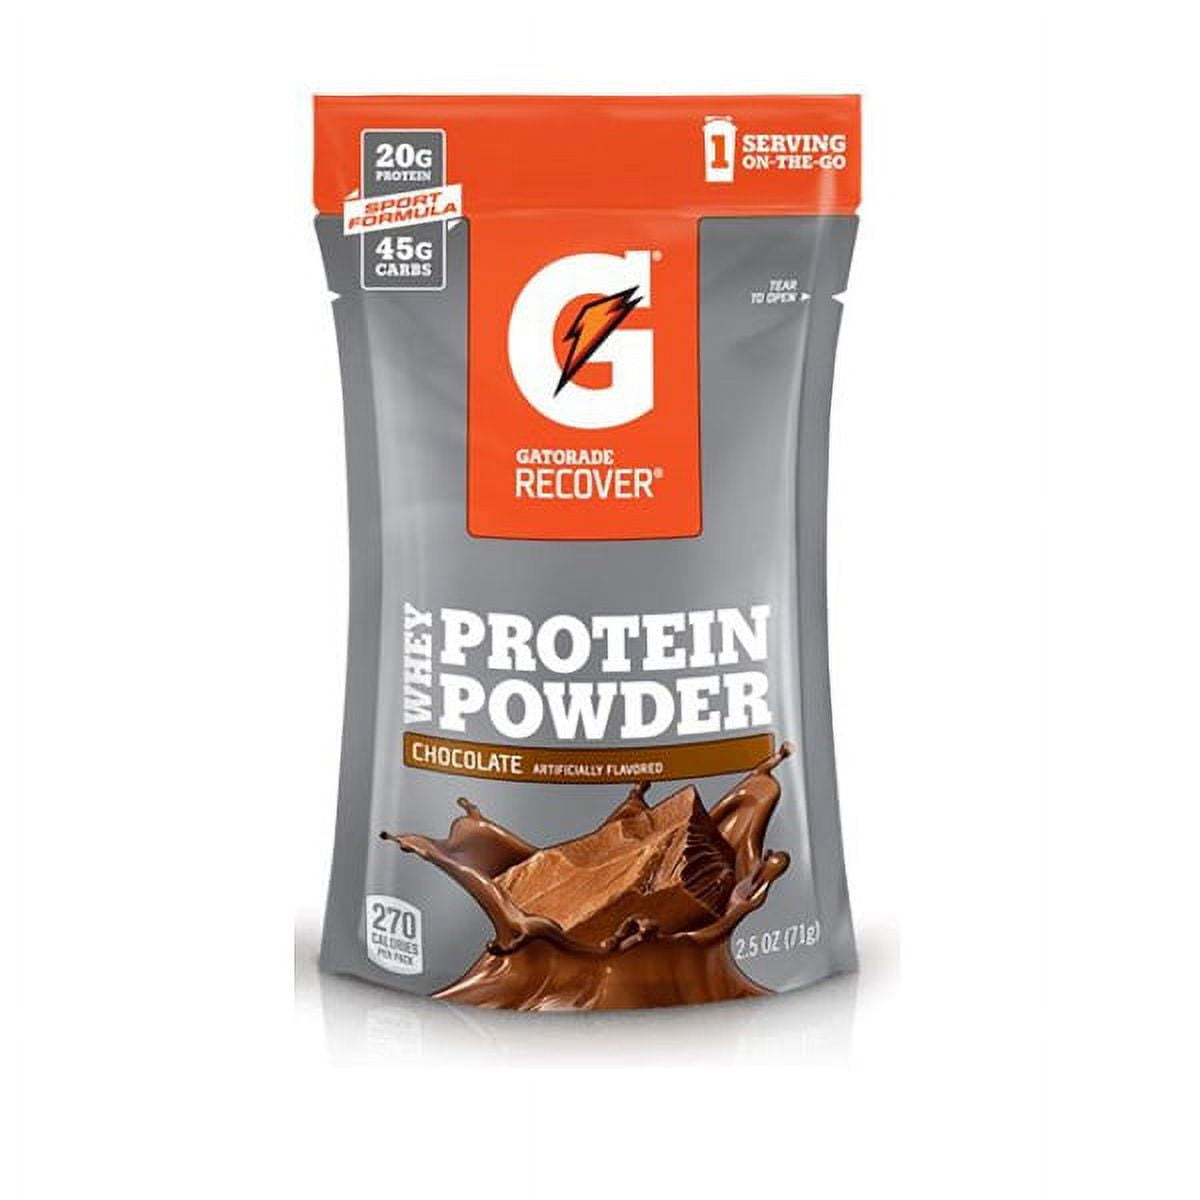 Gatorade Protein Powder 2.5 oz, Powders